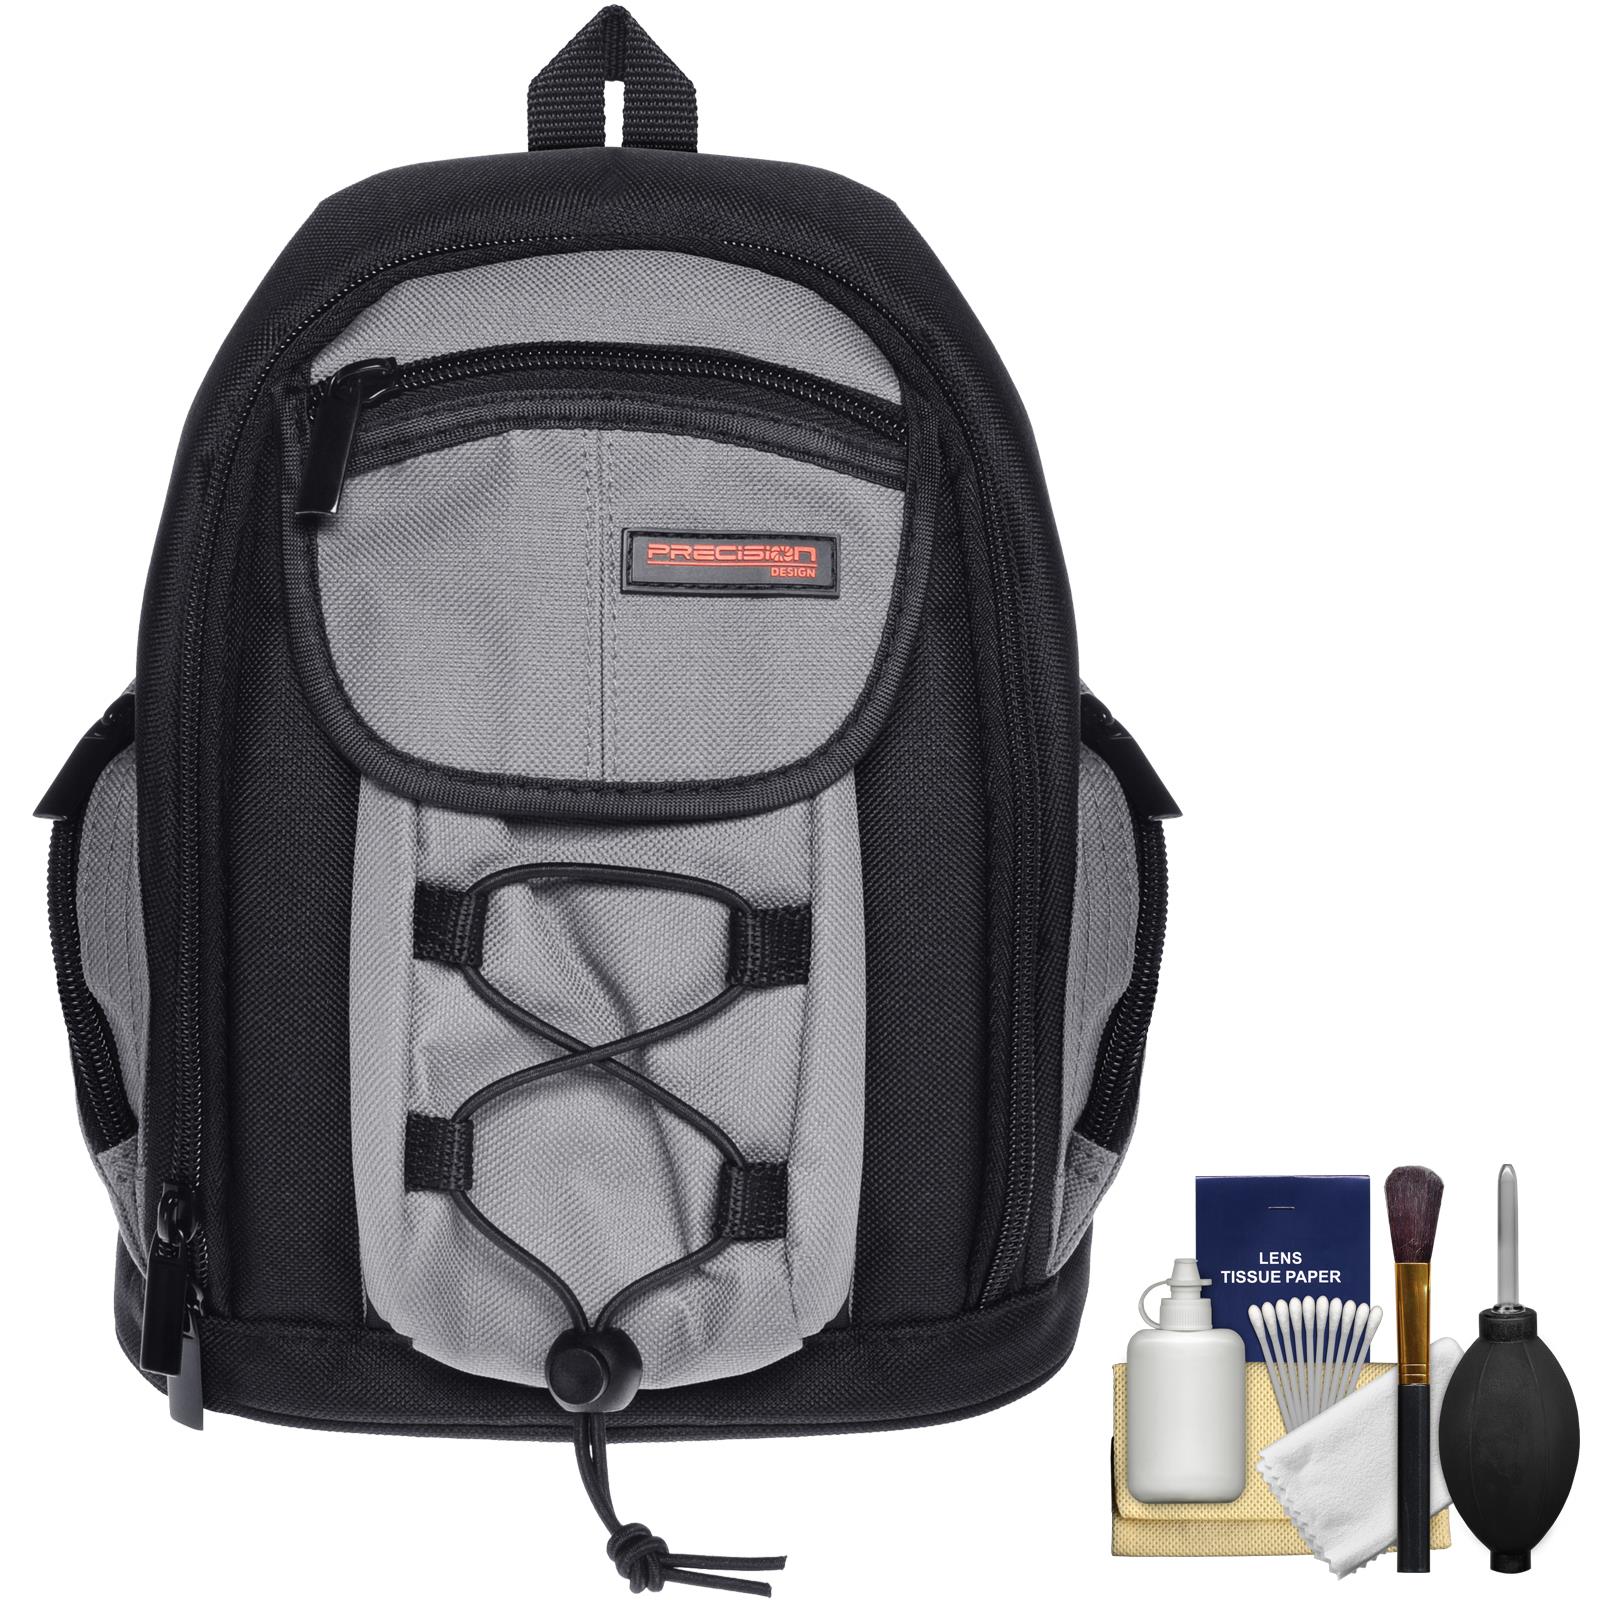 Precision Design PD MBP ILC Digital Camera Mini Sling Backpack with Cleaning Kit for Nikon 1 J1, J2 & V1 Digital Cameras